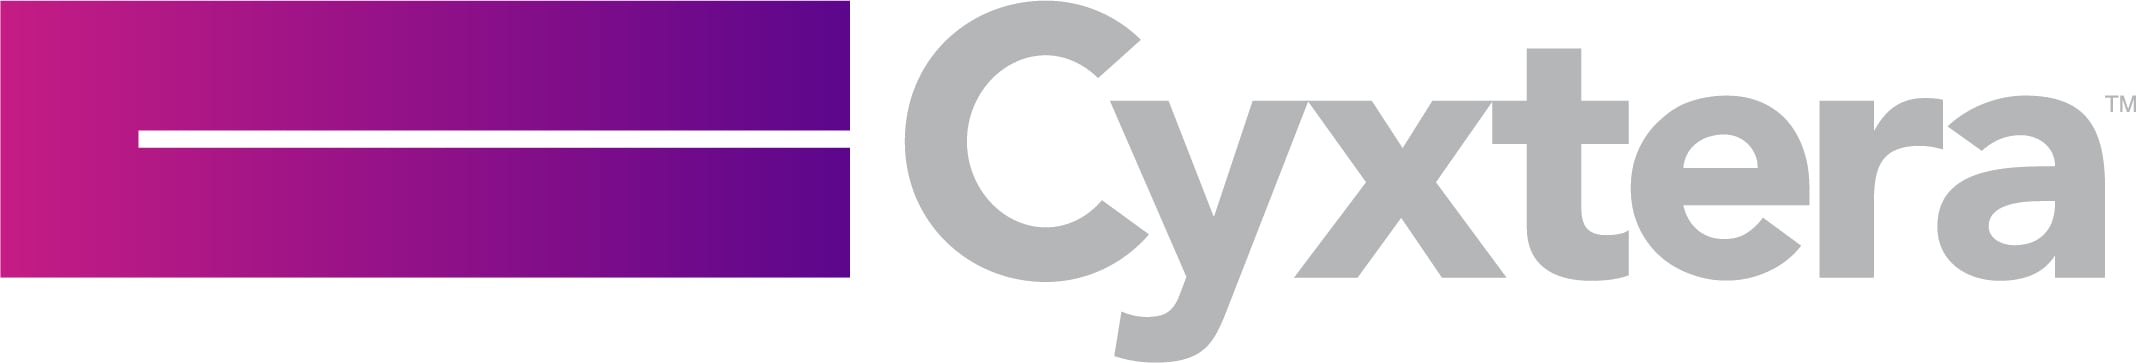 cyxtera logo